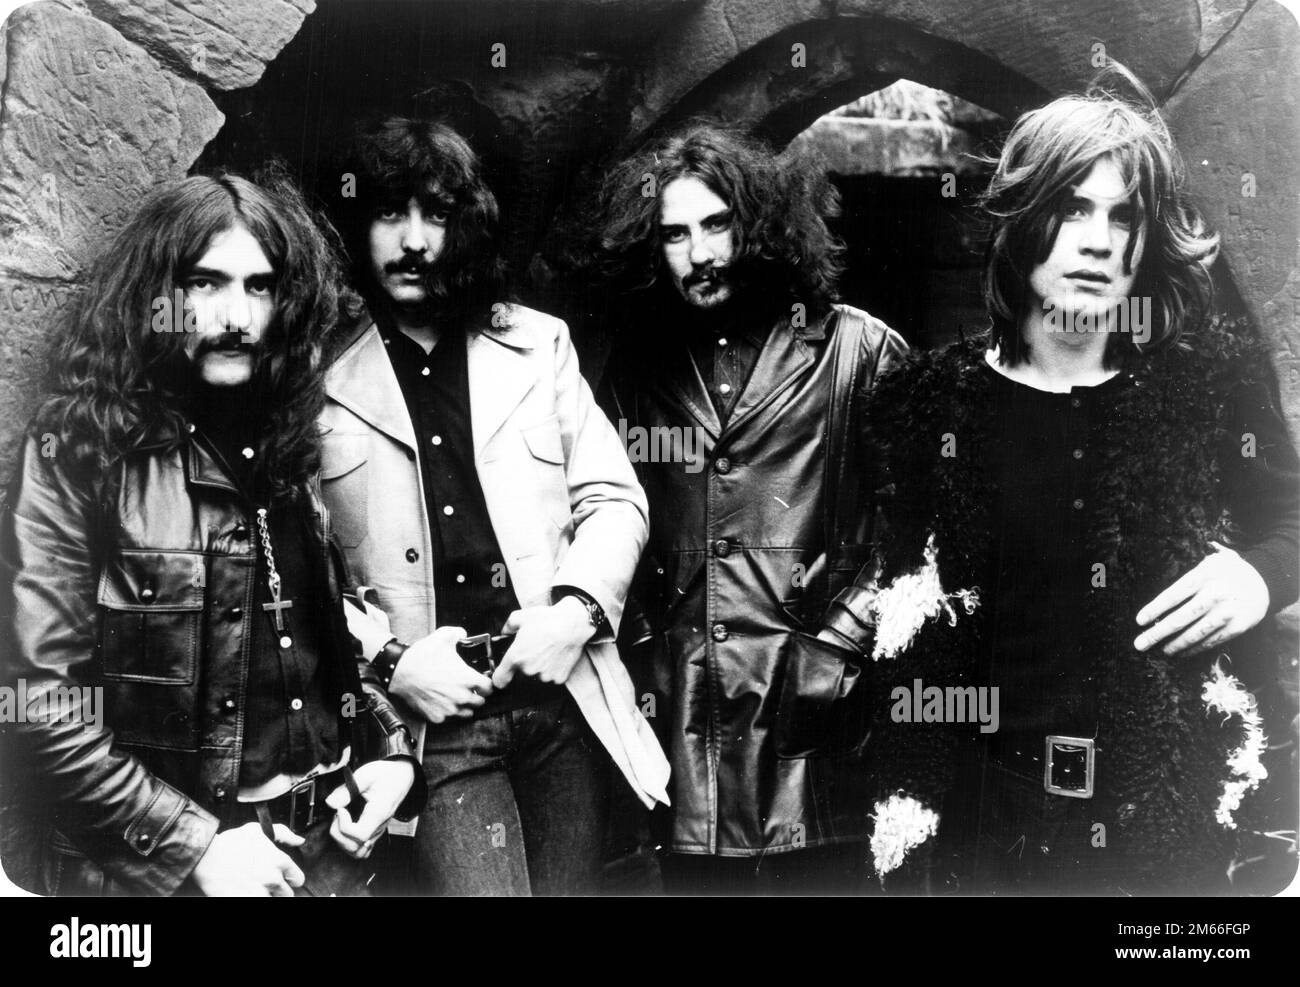 Inventeurs de Heavy Metal - Black Sabbath (1970) Geezer Butler, Tony Iommi, Bill Ward, Ozzy Osbourne. Banque D'Images